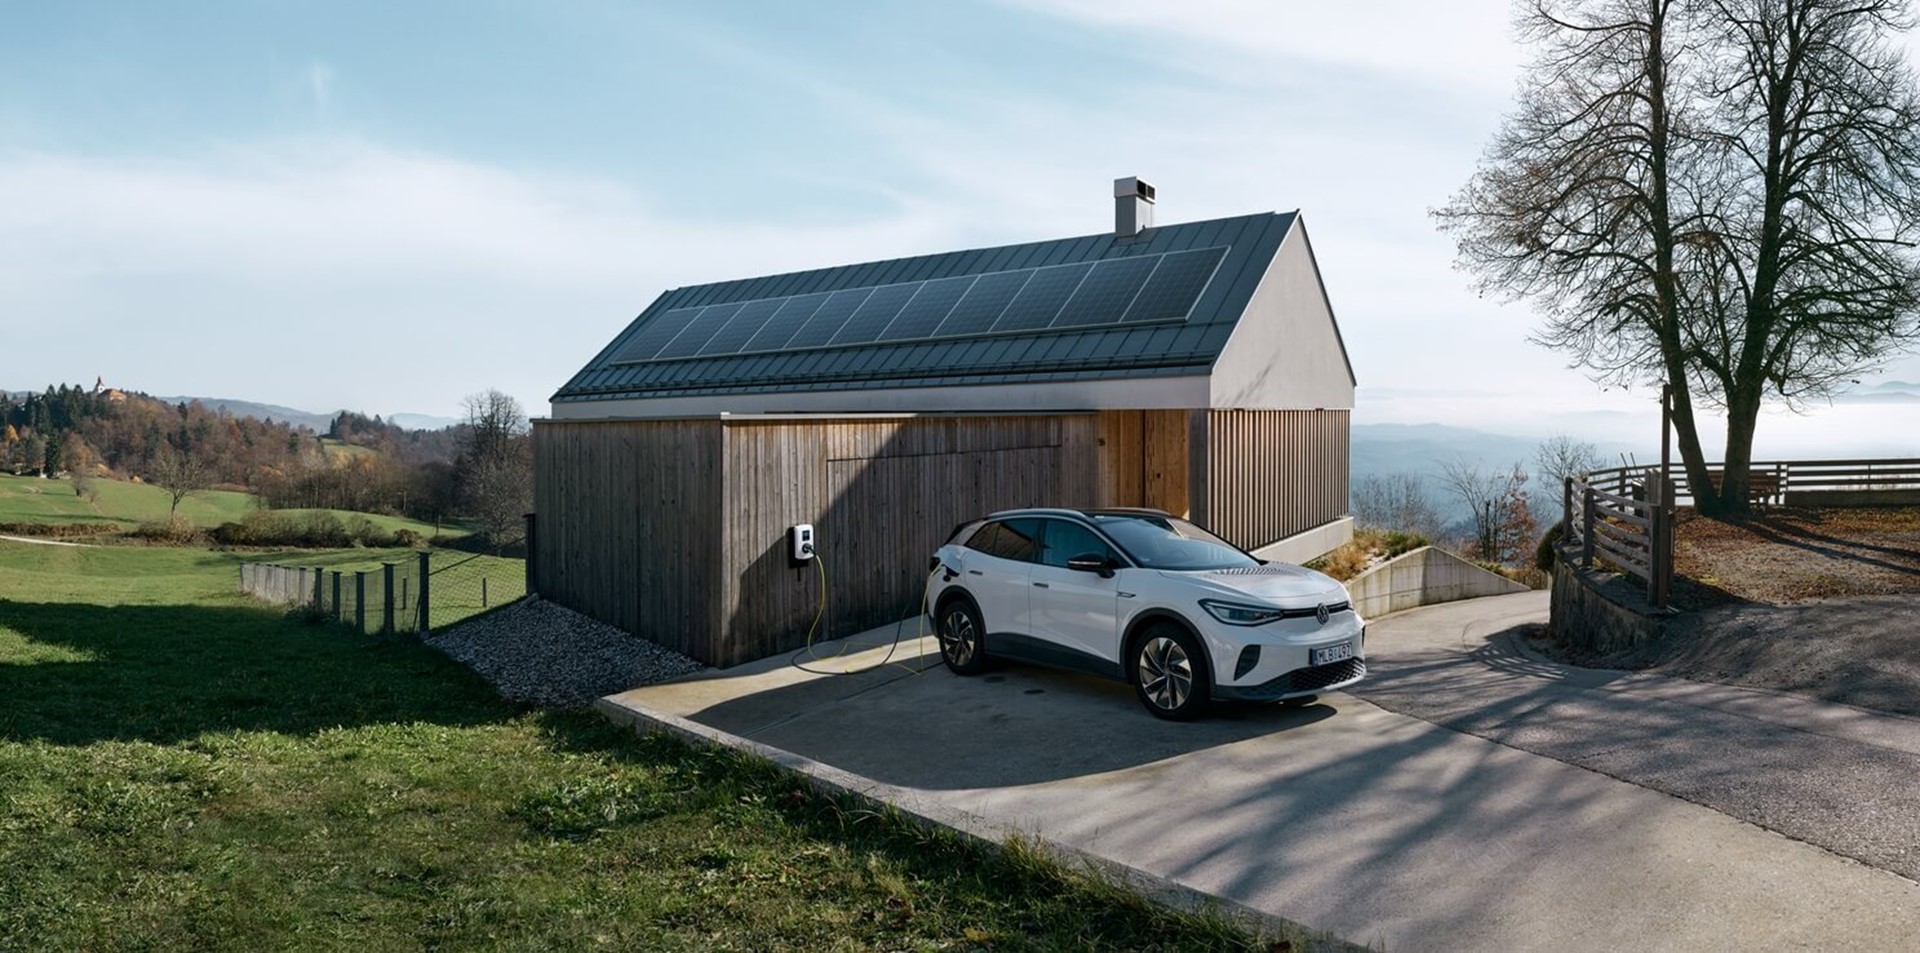 Elektrische auto bij een huis met zonnepanelen - Hoeveel zonnepanelen heb ik nodig voor een elektrische auto?